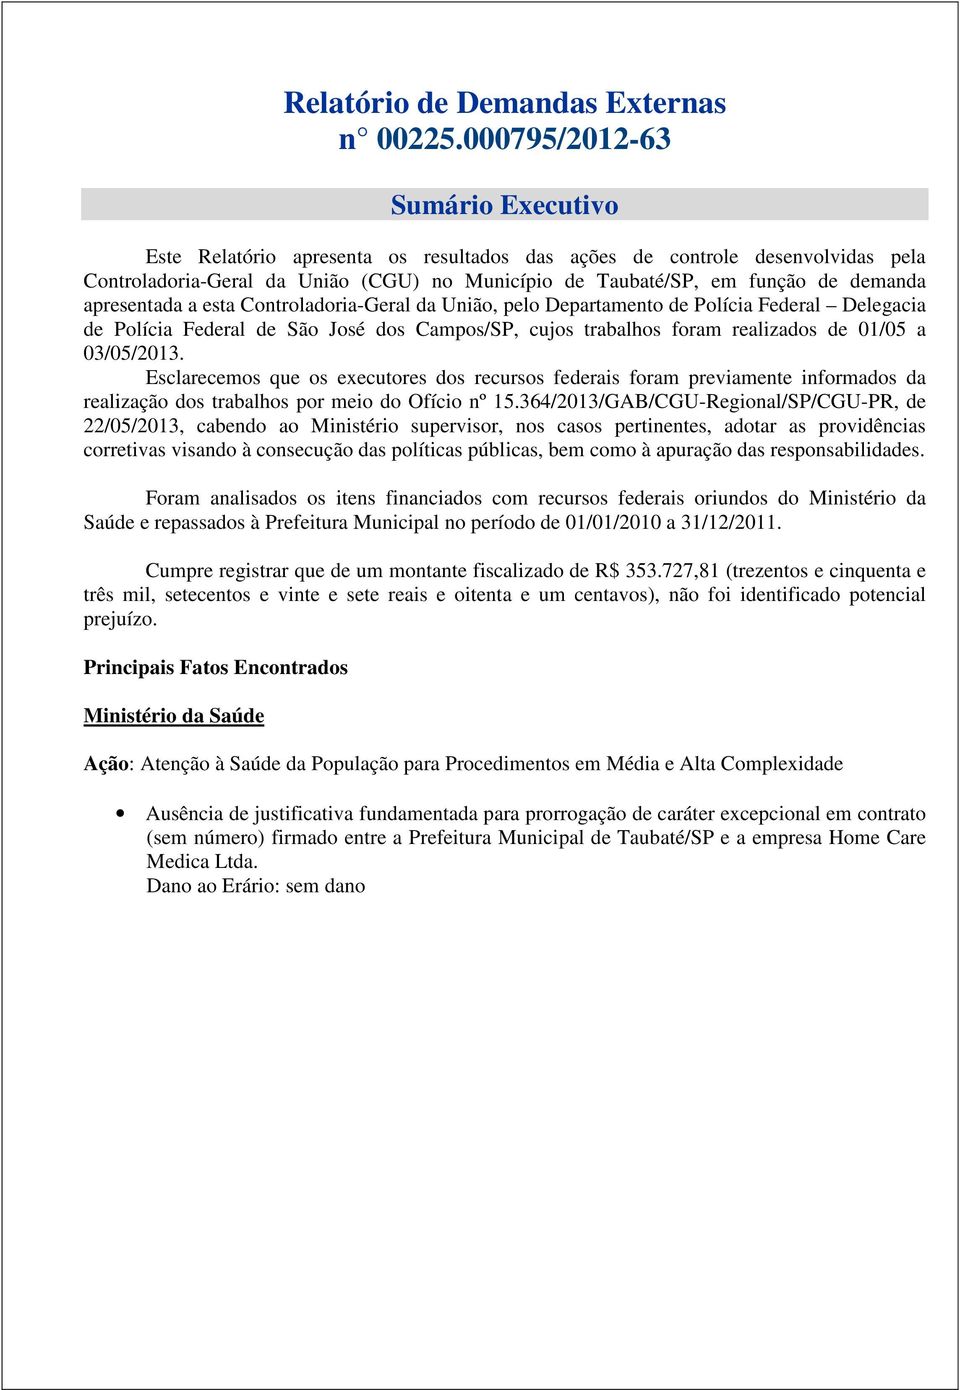 apresentada a esta Controladoria-Geral da União, pelo Departamento de Polícia Federal Delegacia de Polícia Federal de São José dos Campos/SP, cujos trabalhos foram realizados de 01/05 a 03/05/2013.